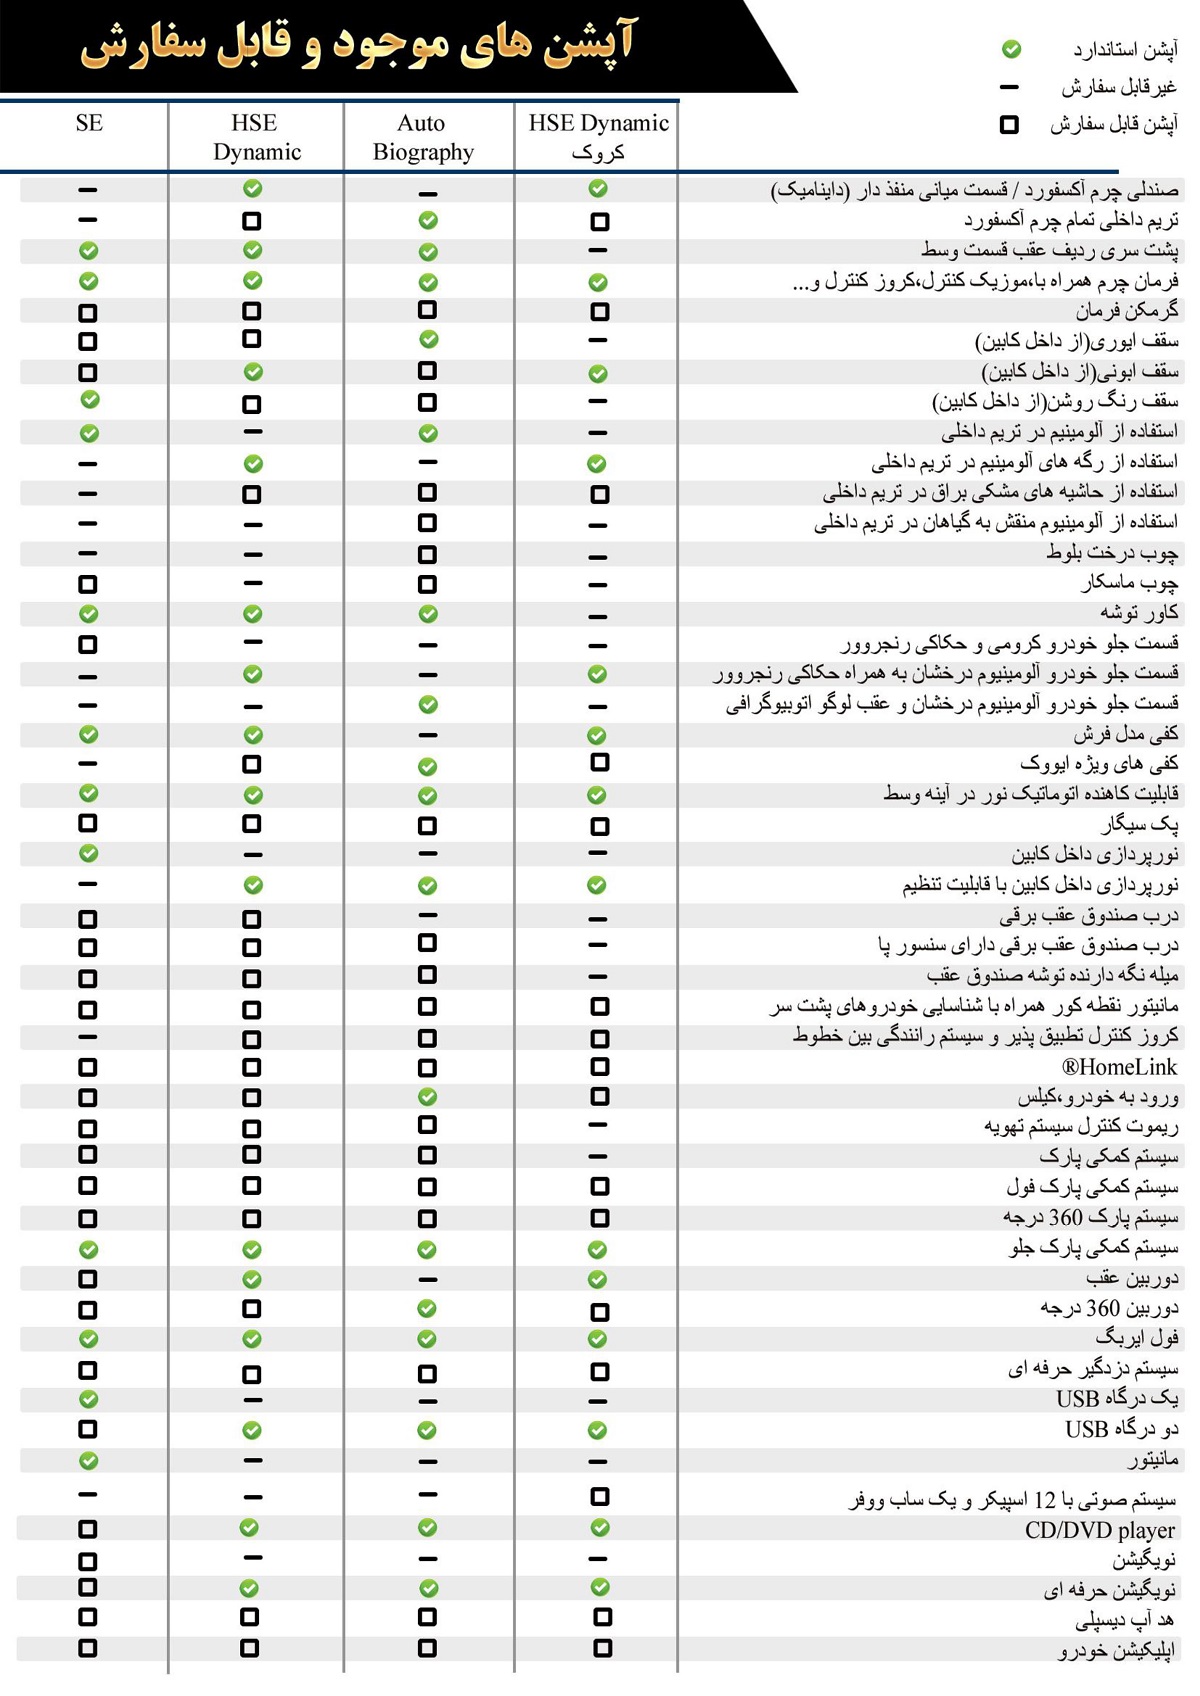  مشخصات کامل محصول جدید رنجرور ایووک هامان 2017 در ایران 